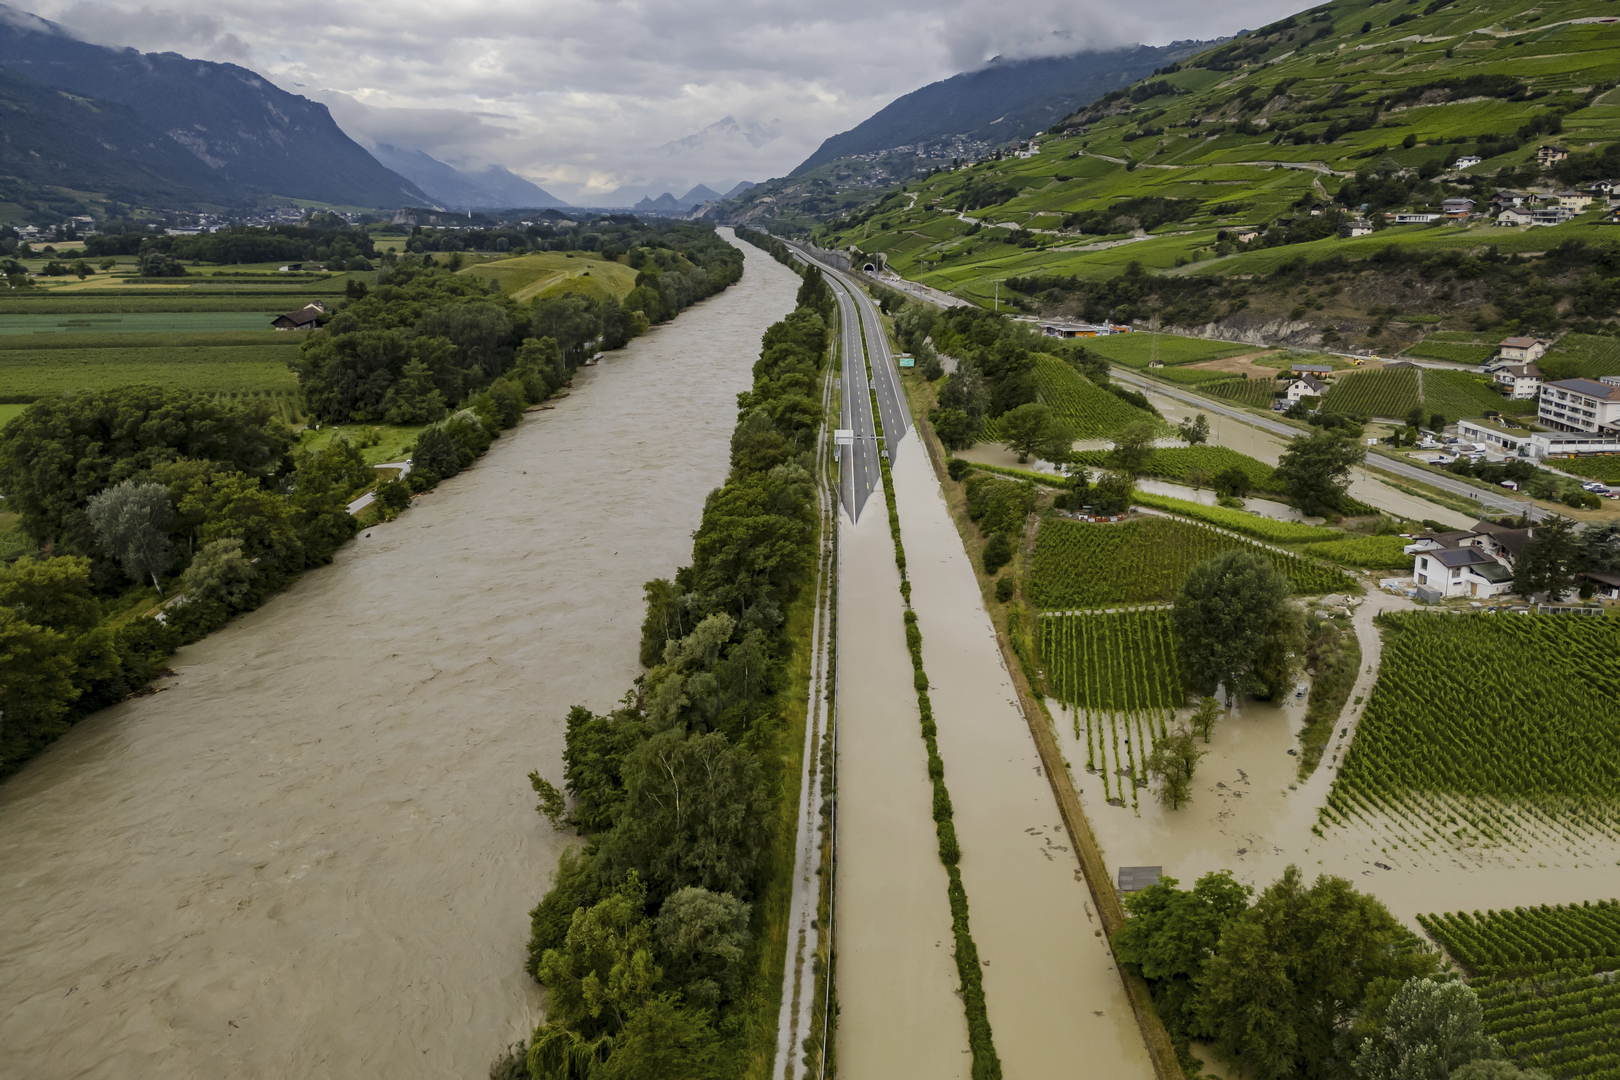 سويسرا.. مصرع شخصين وفقدان آخر جراء انهيار أرضي كبير (فيديو+صور)